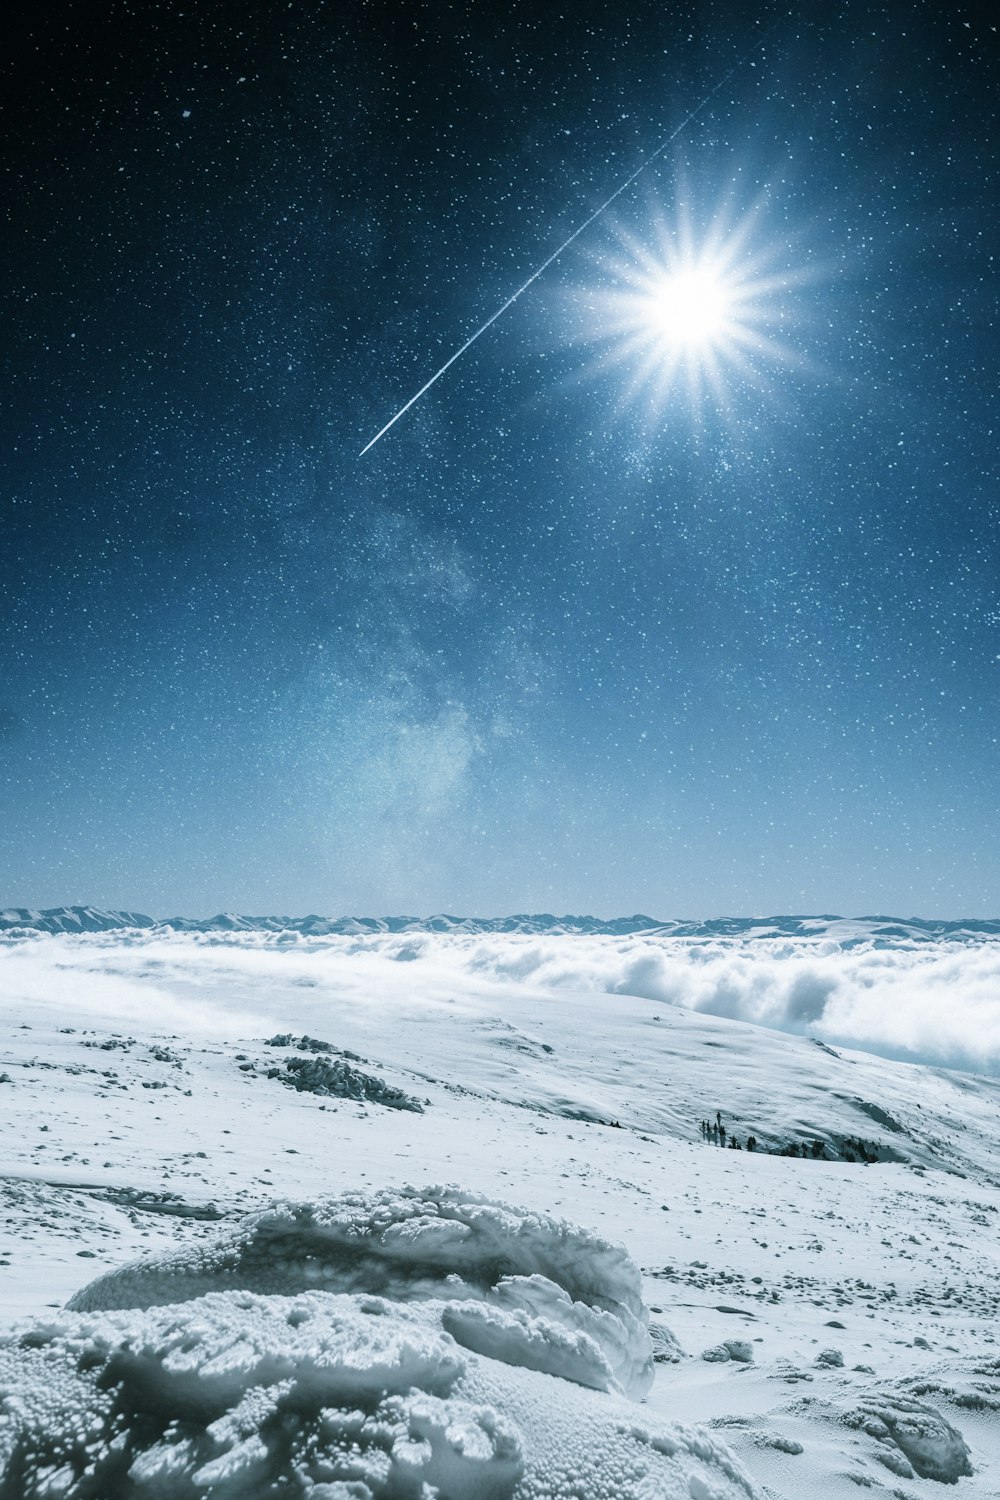 Ein heller Stern leuchtet über einer verschneiten Landschaft